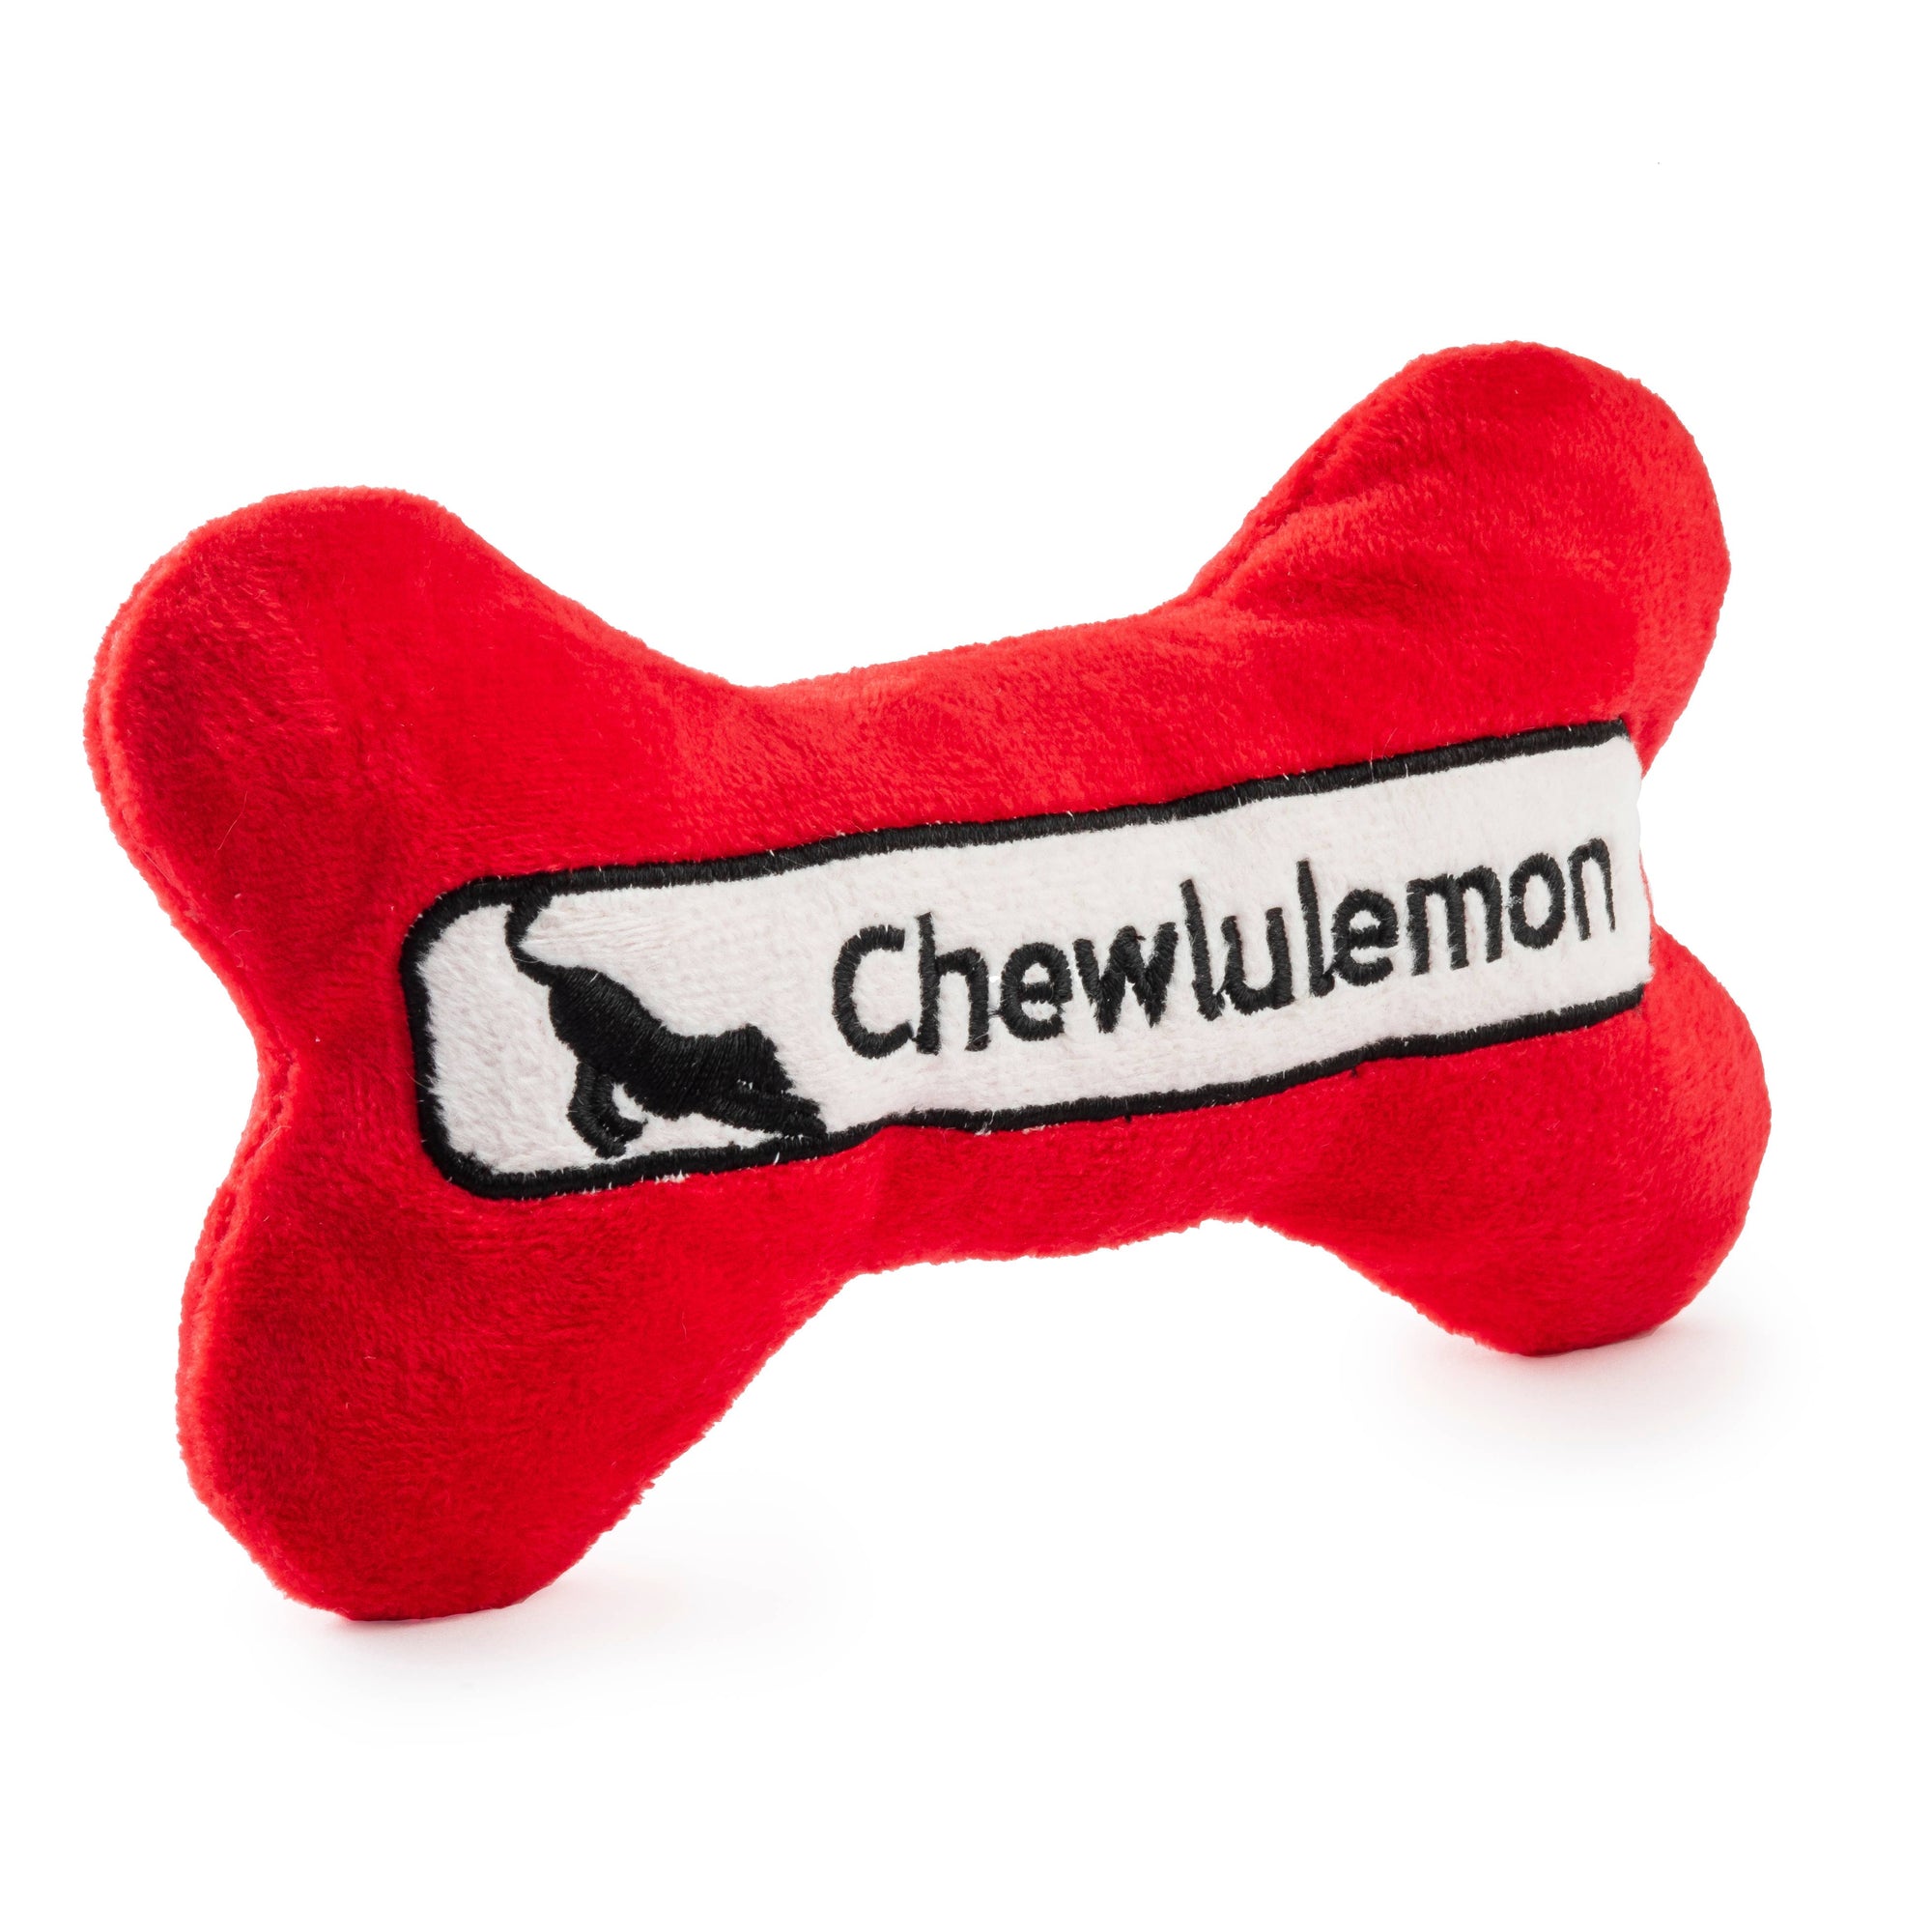 Chewlulemon Bone Dog Toy - The Preppy Bunny